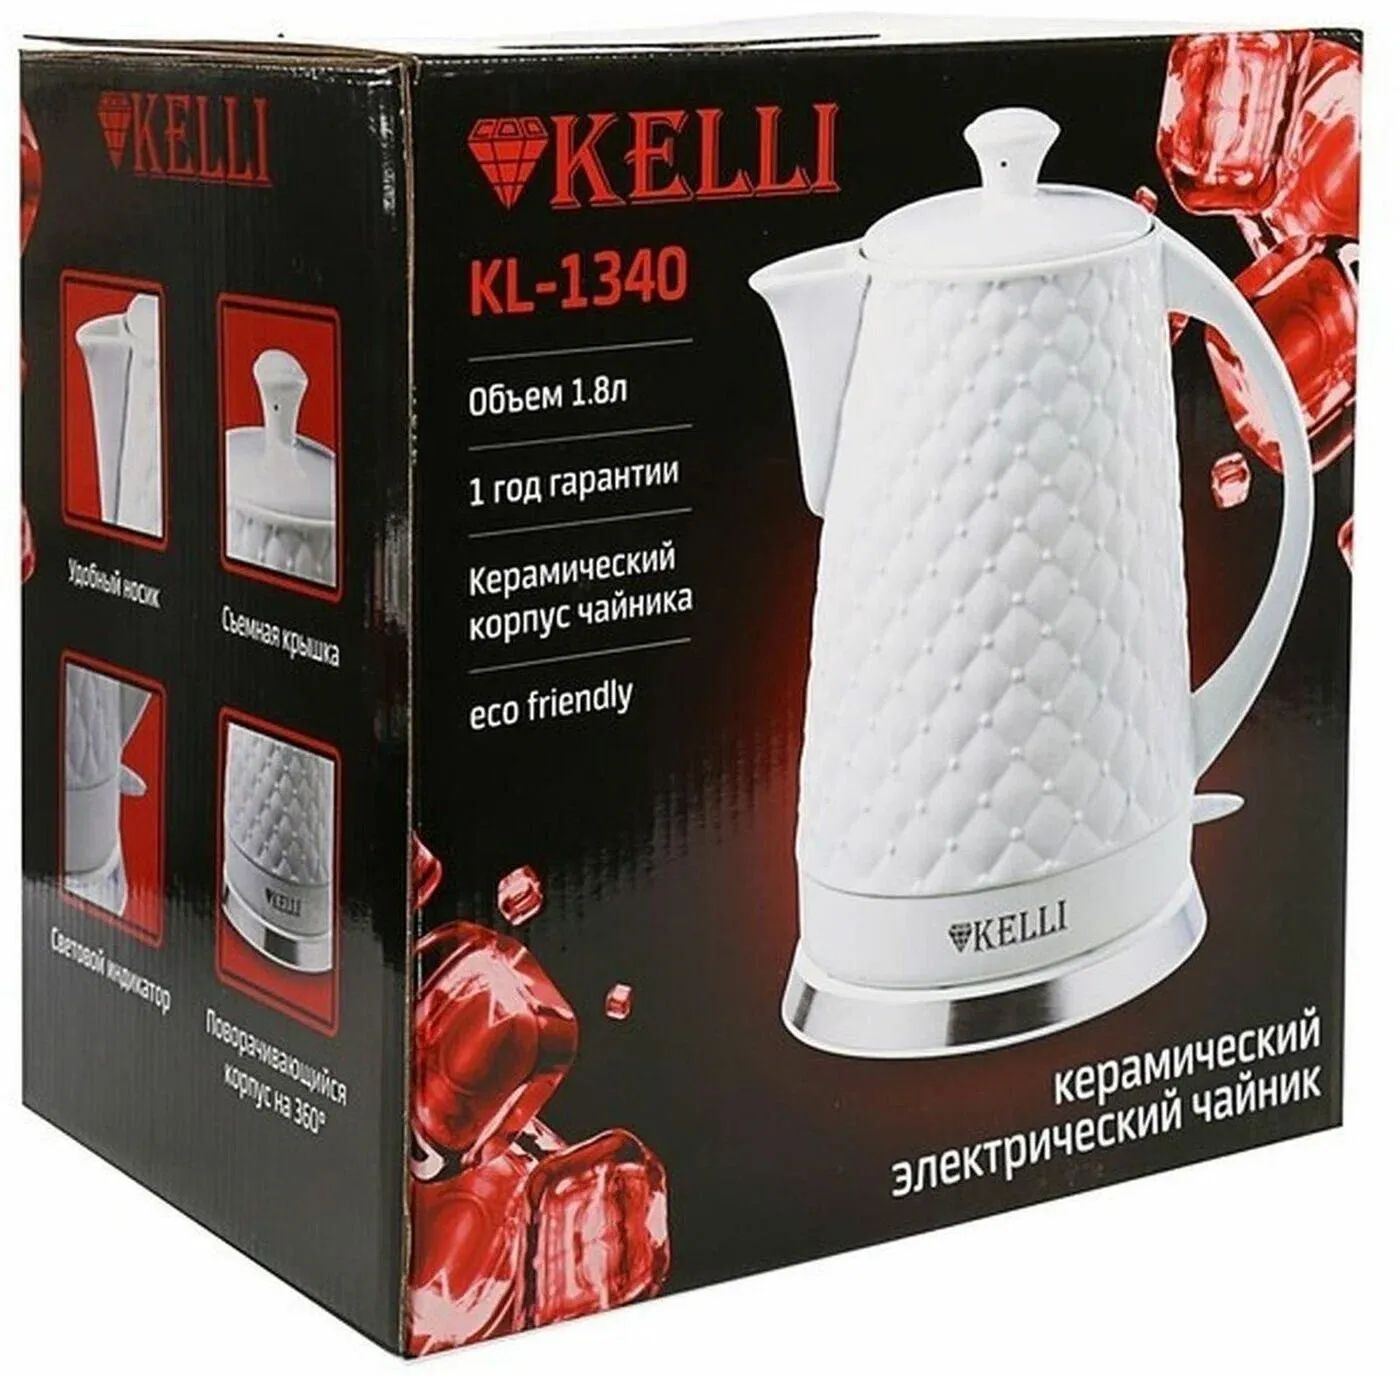 чайник электрический kelli kl-1340, купить в Красноярске чайник электрический kelli kl-1340,  купить в Красноярске дешево чайник электрический kelli kl-1340, купить в Красноярске минимальной цене чайник электрический kelli kl-1340